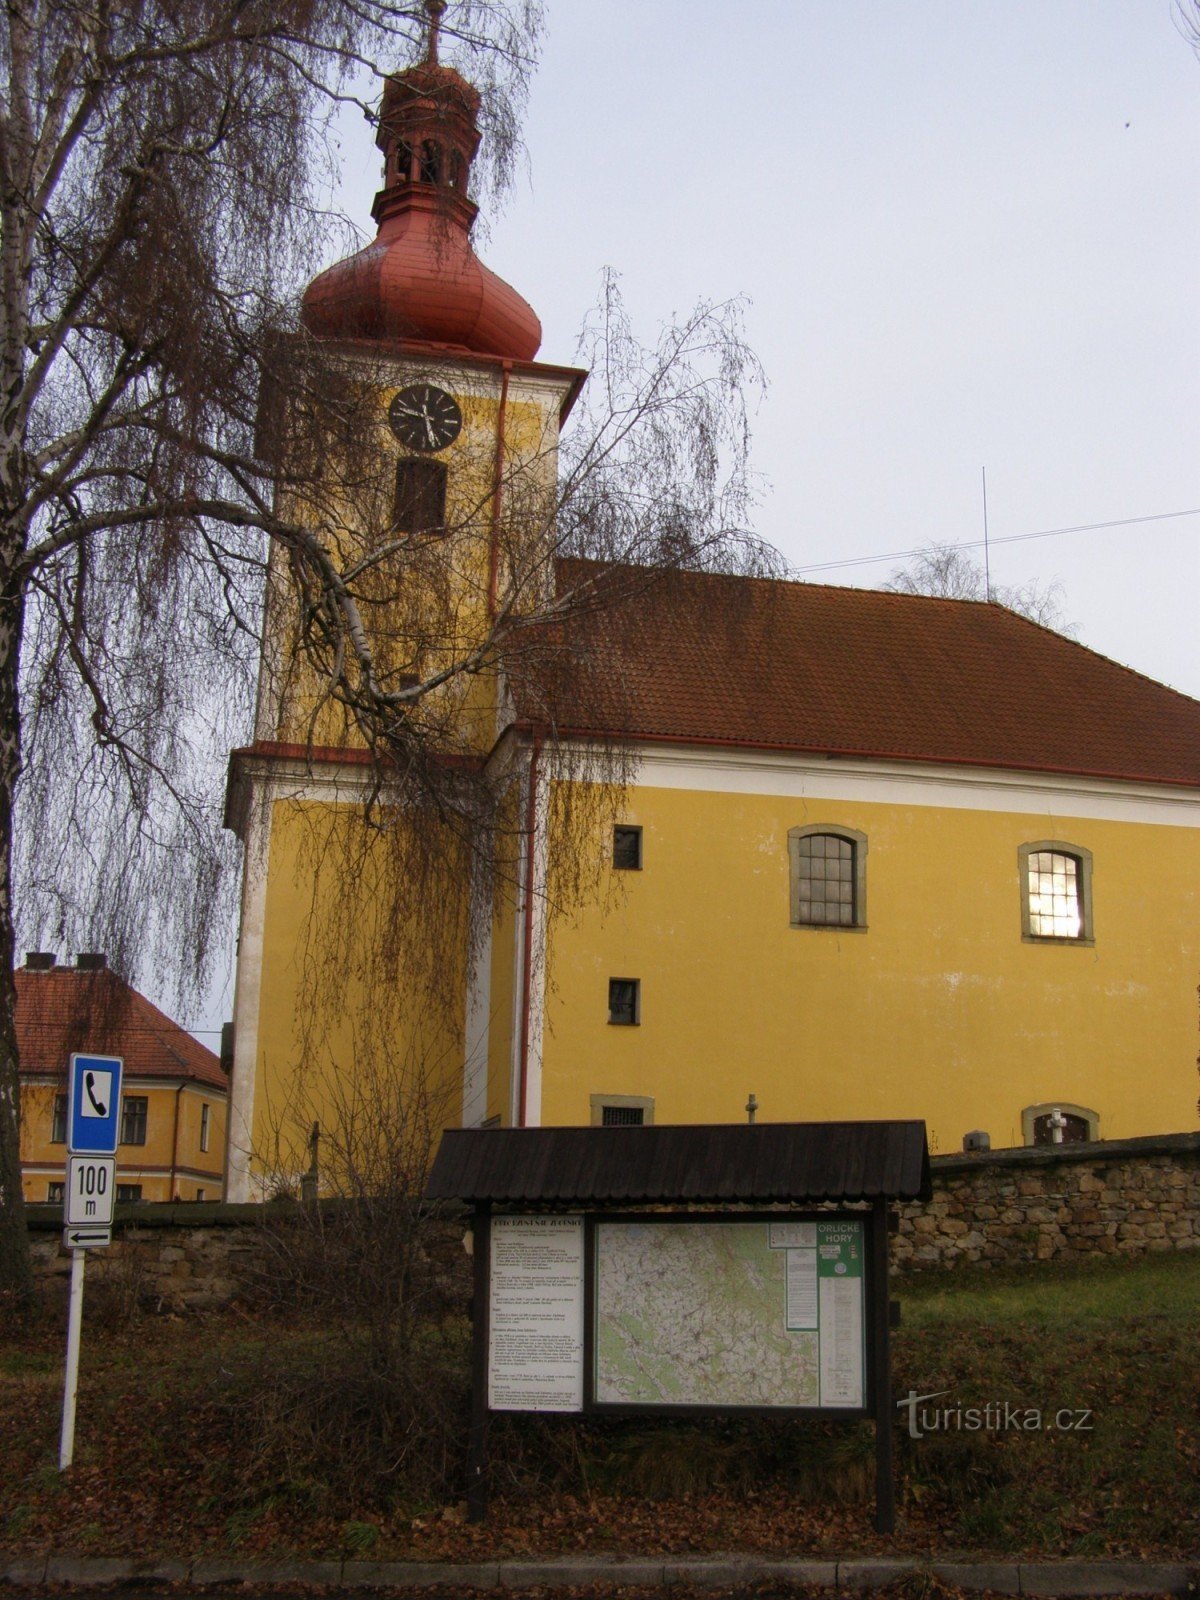 tourist crossroads - Rybná nad Zdobnicí, church